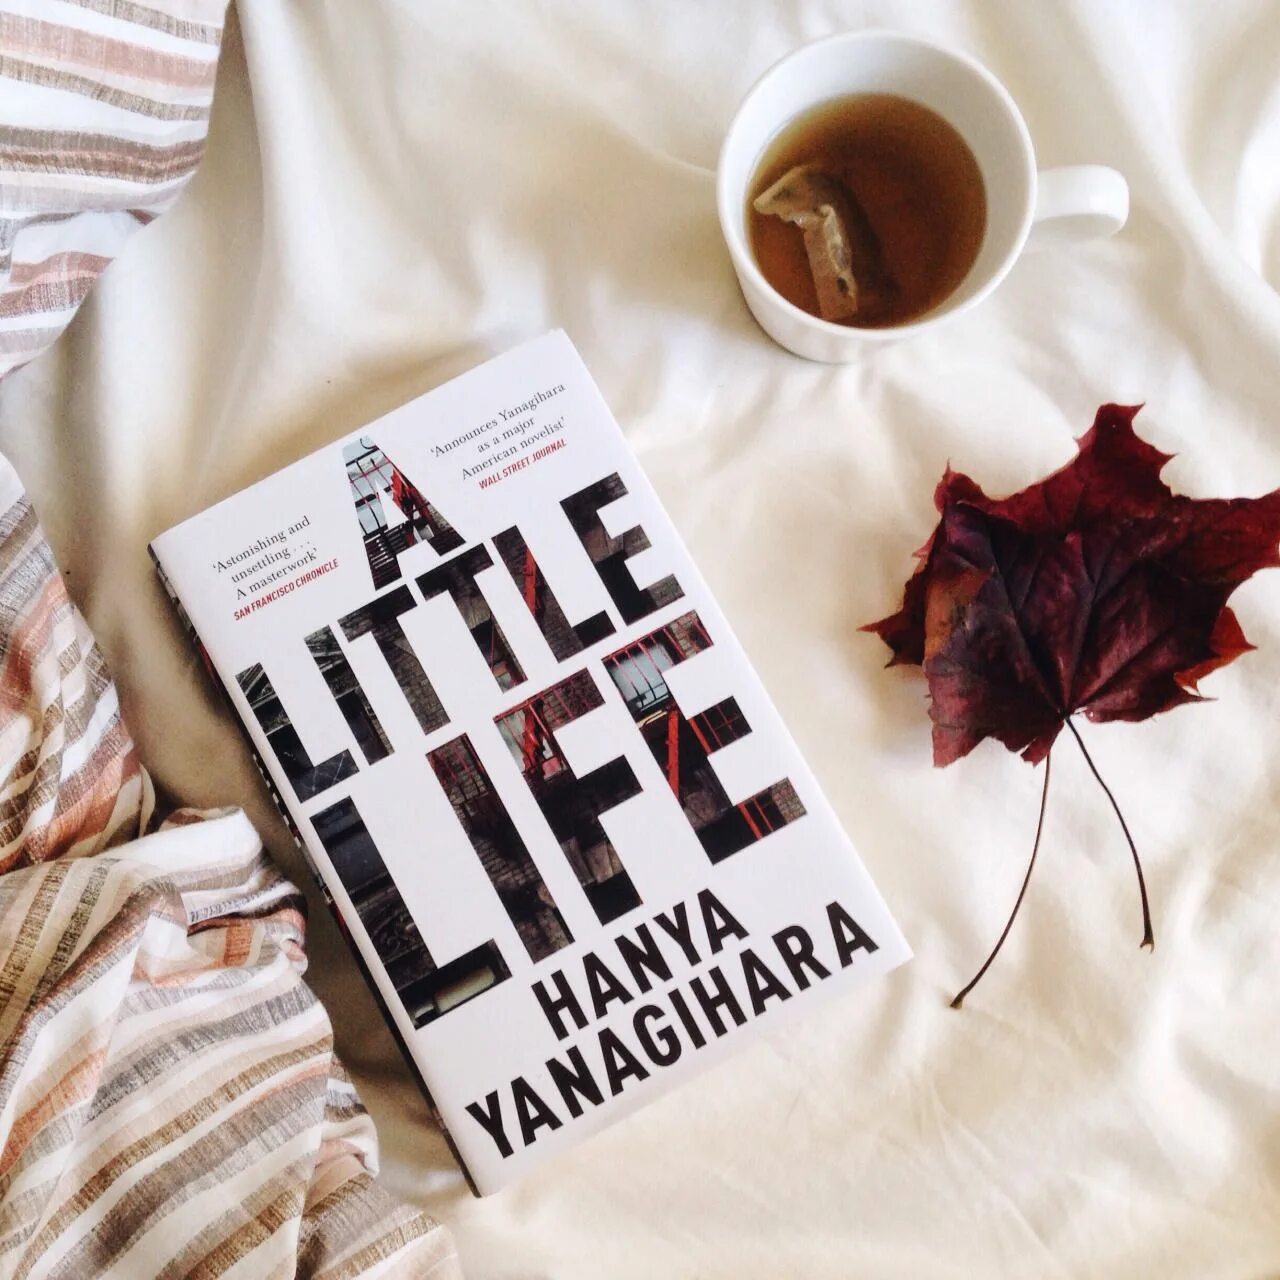 A little Life книга. Маленькая жизнь. Янагихара маленькая жизнь. Обложка книги a little Life. This little life